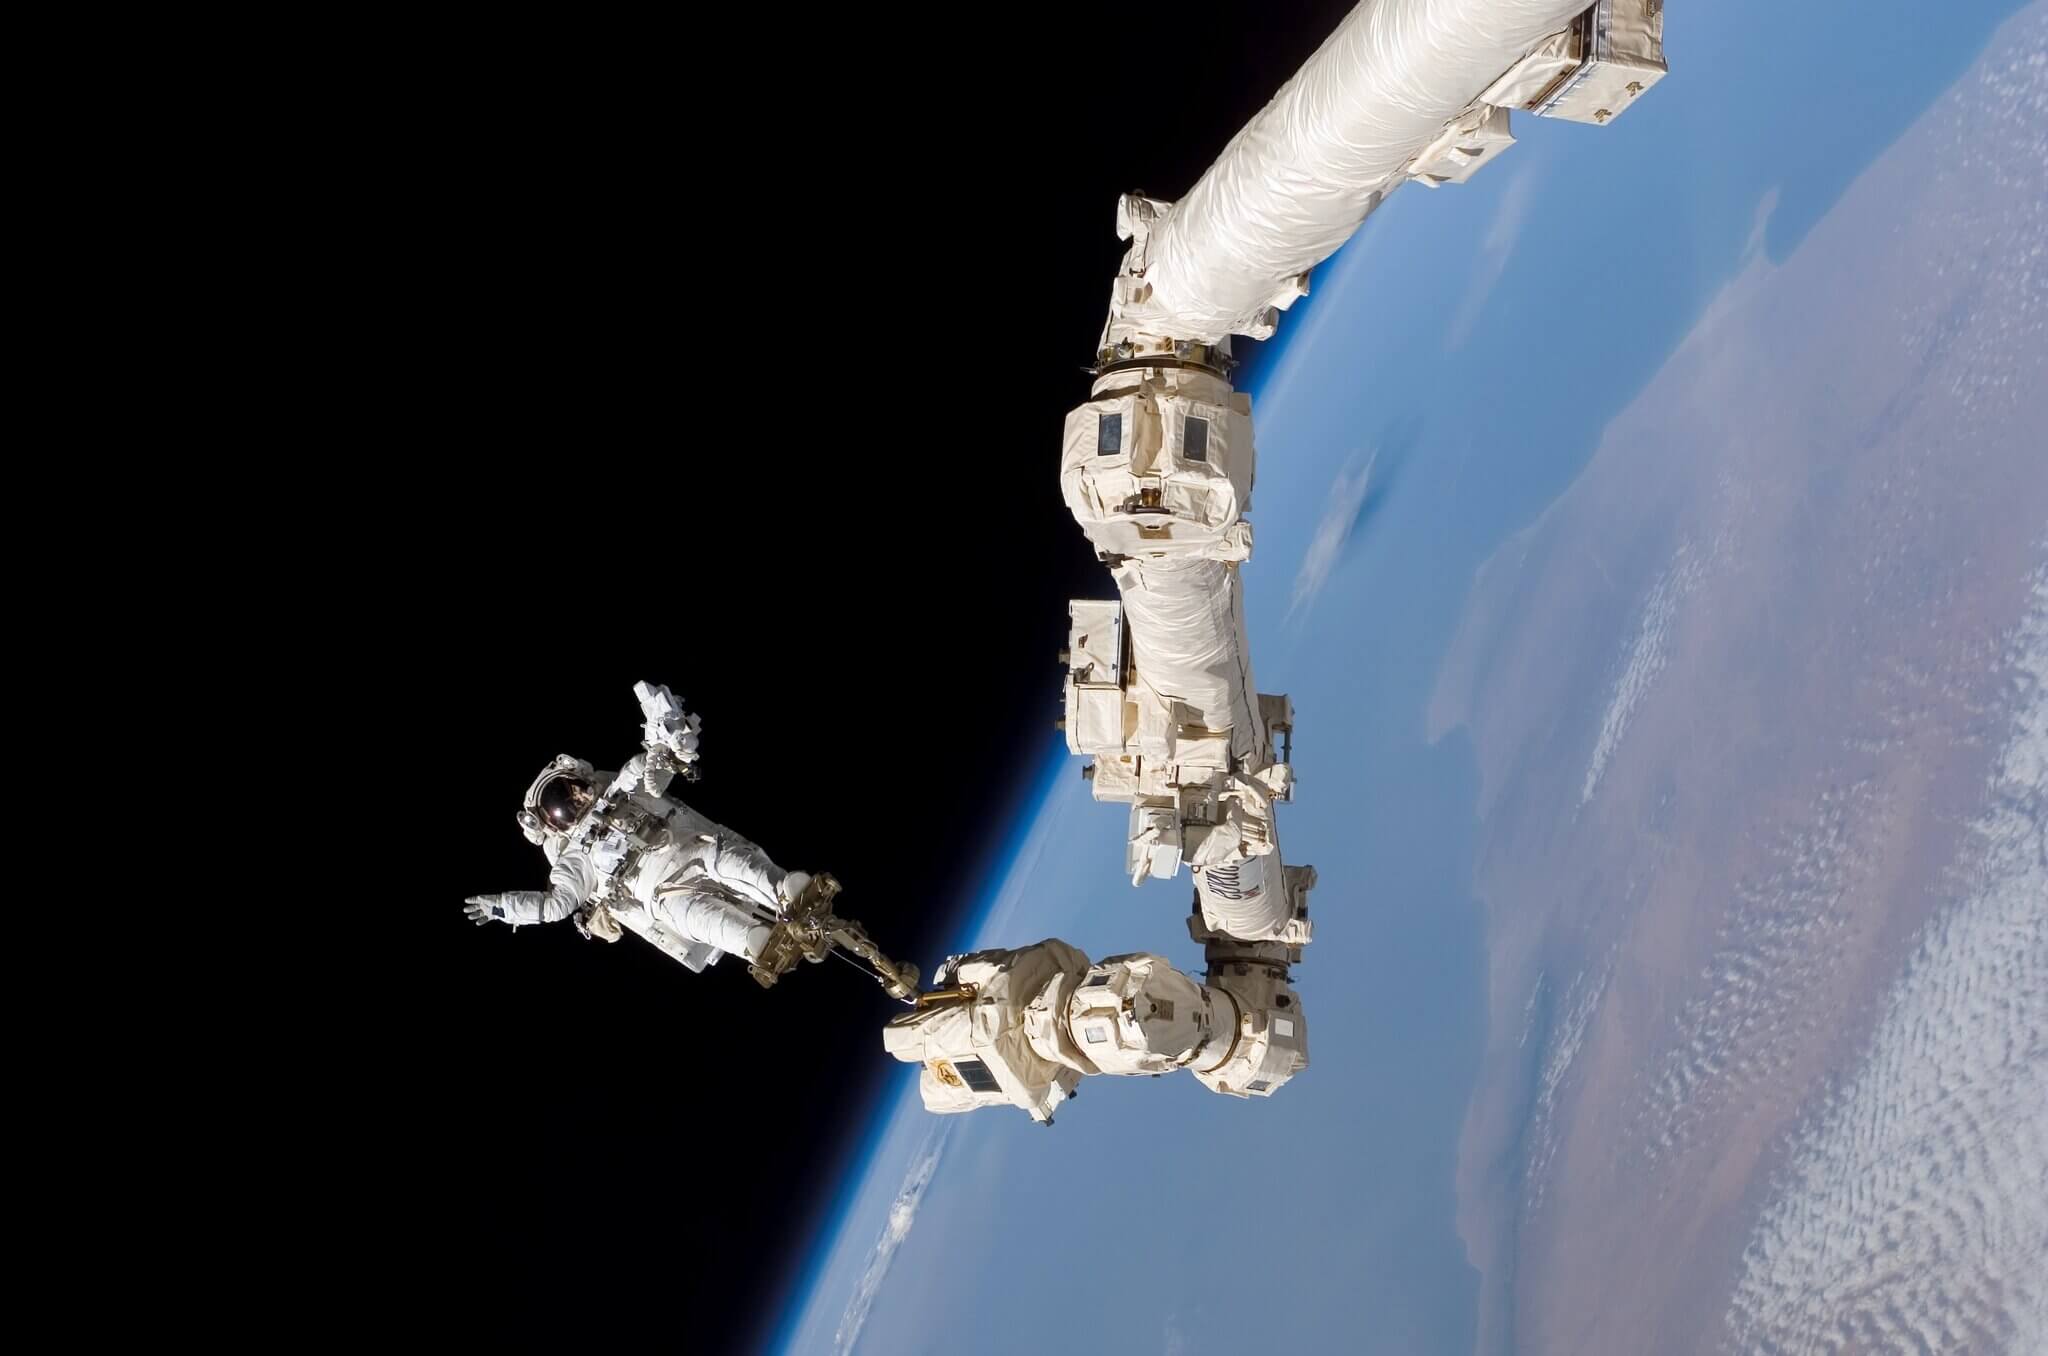 အပြည်ပြည်ဆိုင်ရာ အာကာသစခန်း ယာဉ် ပြင်ပ ထွက်အလုပ်လုပ်နေသော အာကာသ ယာဉ်မှုးတစ်ဦး (Photo: NASA)